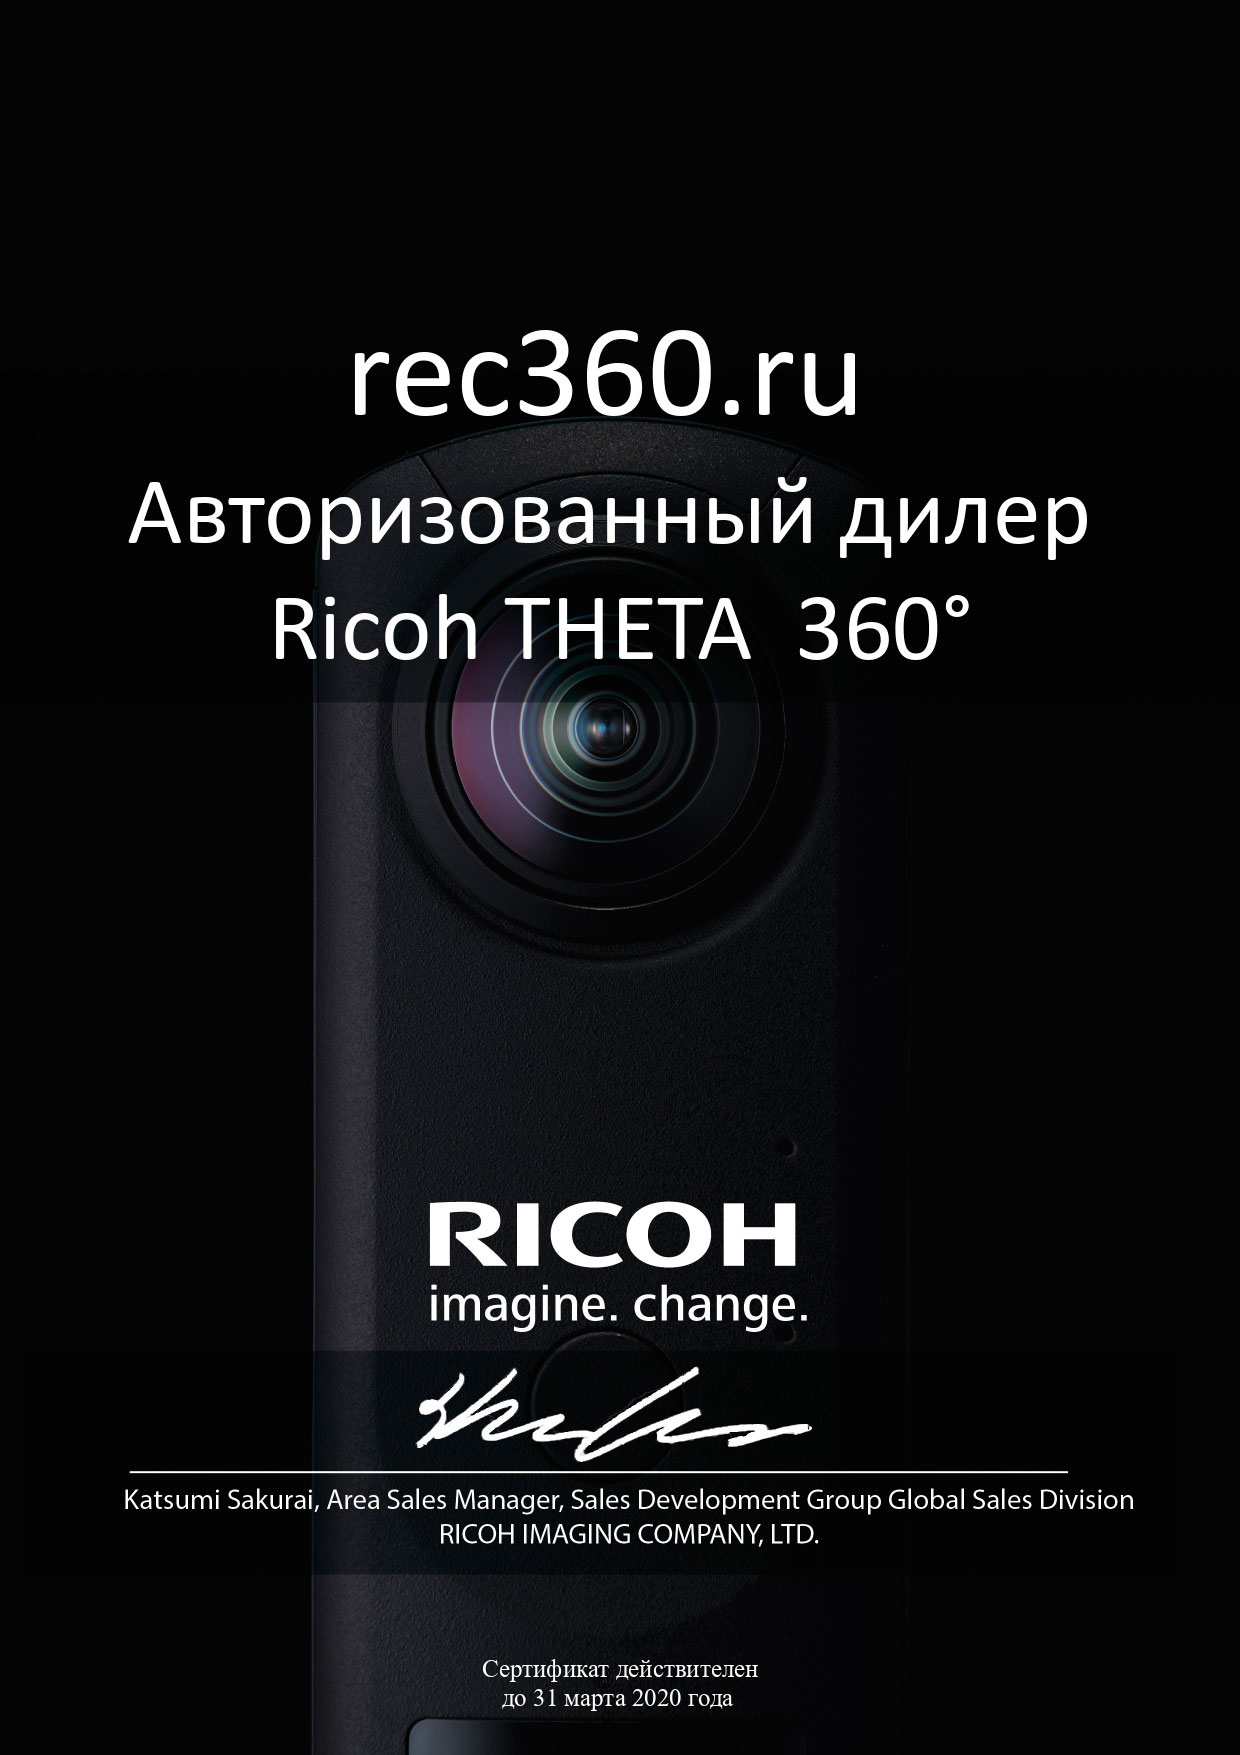 REC360.ru - официальный дилер Ricoh Theta 360 на территории РФ